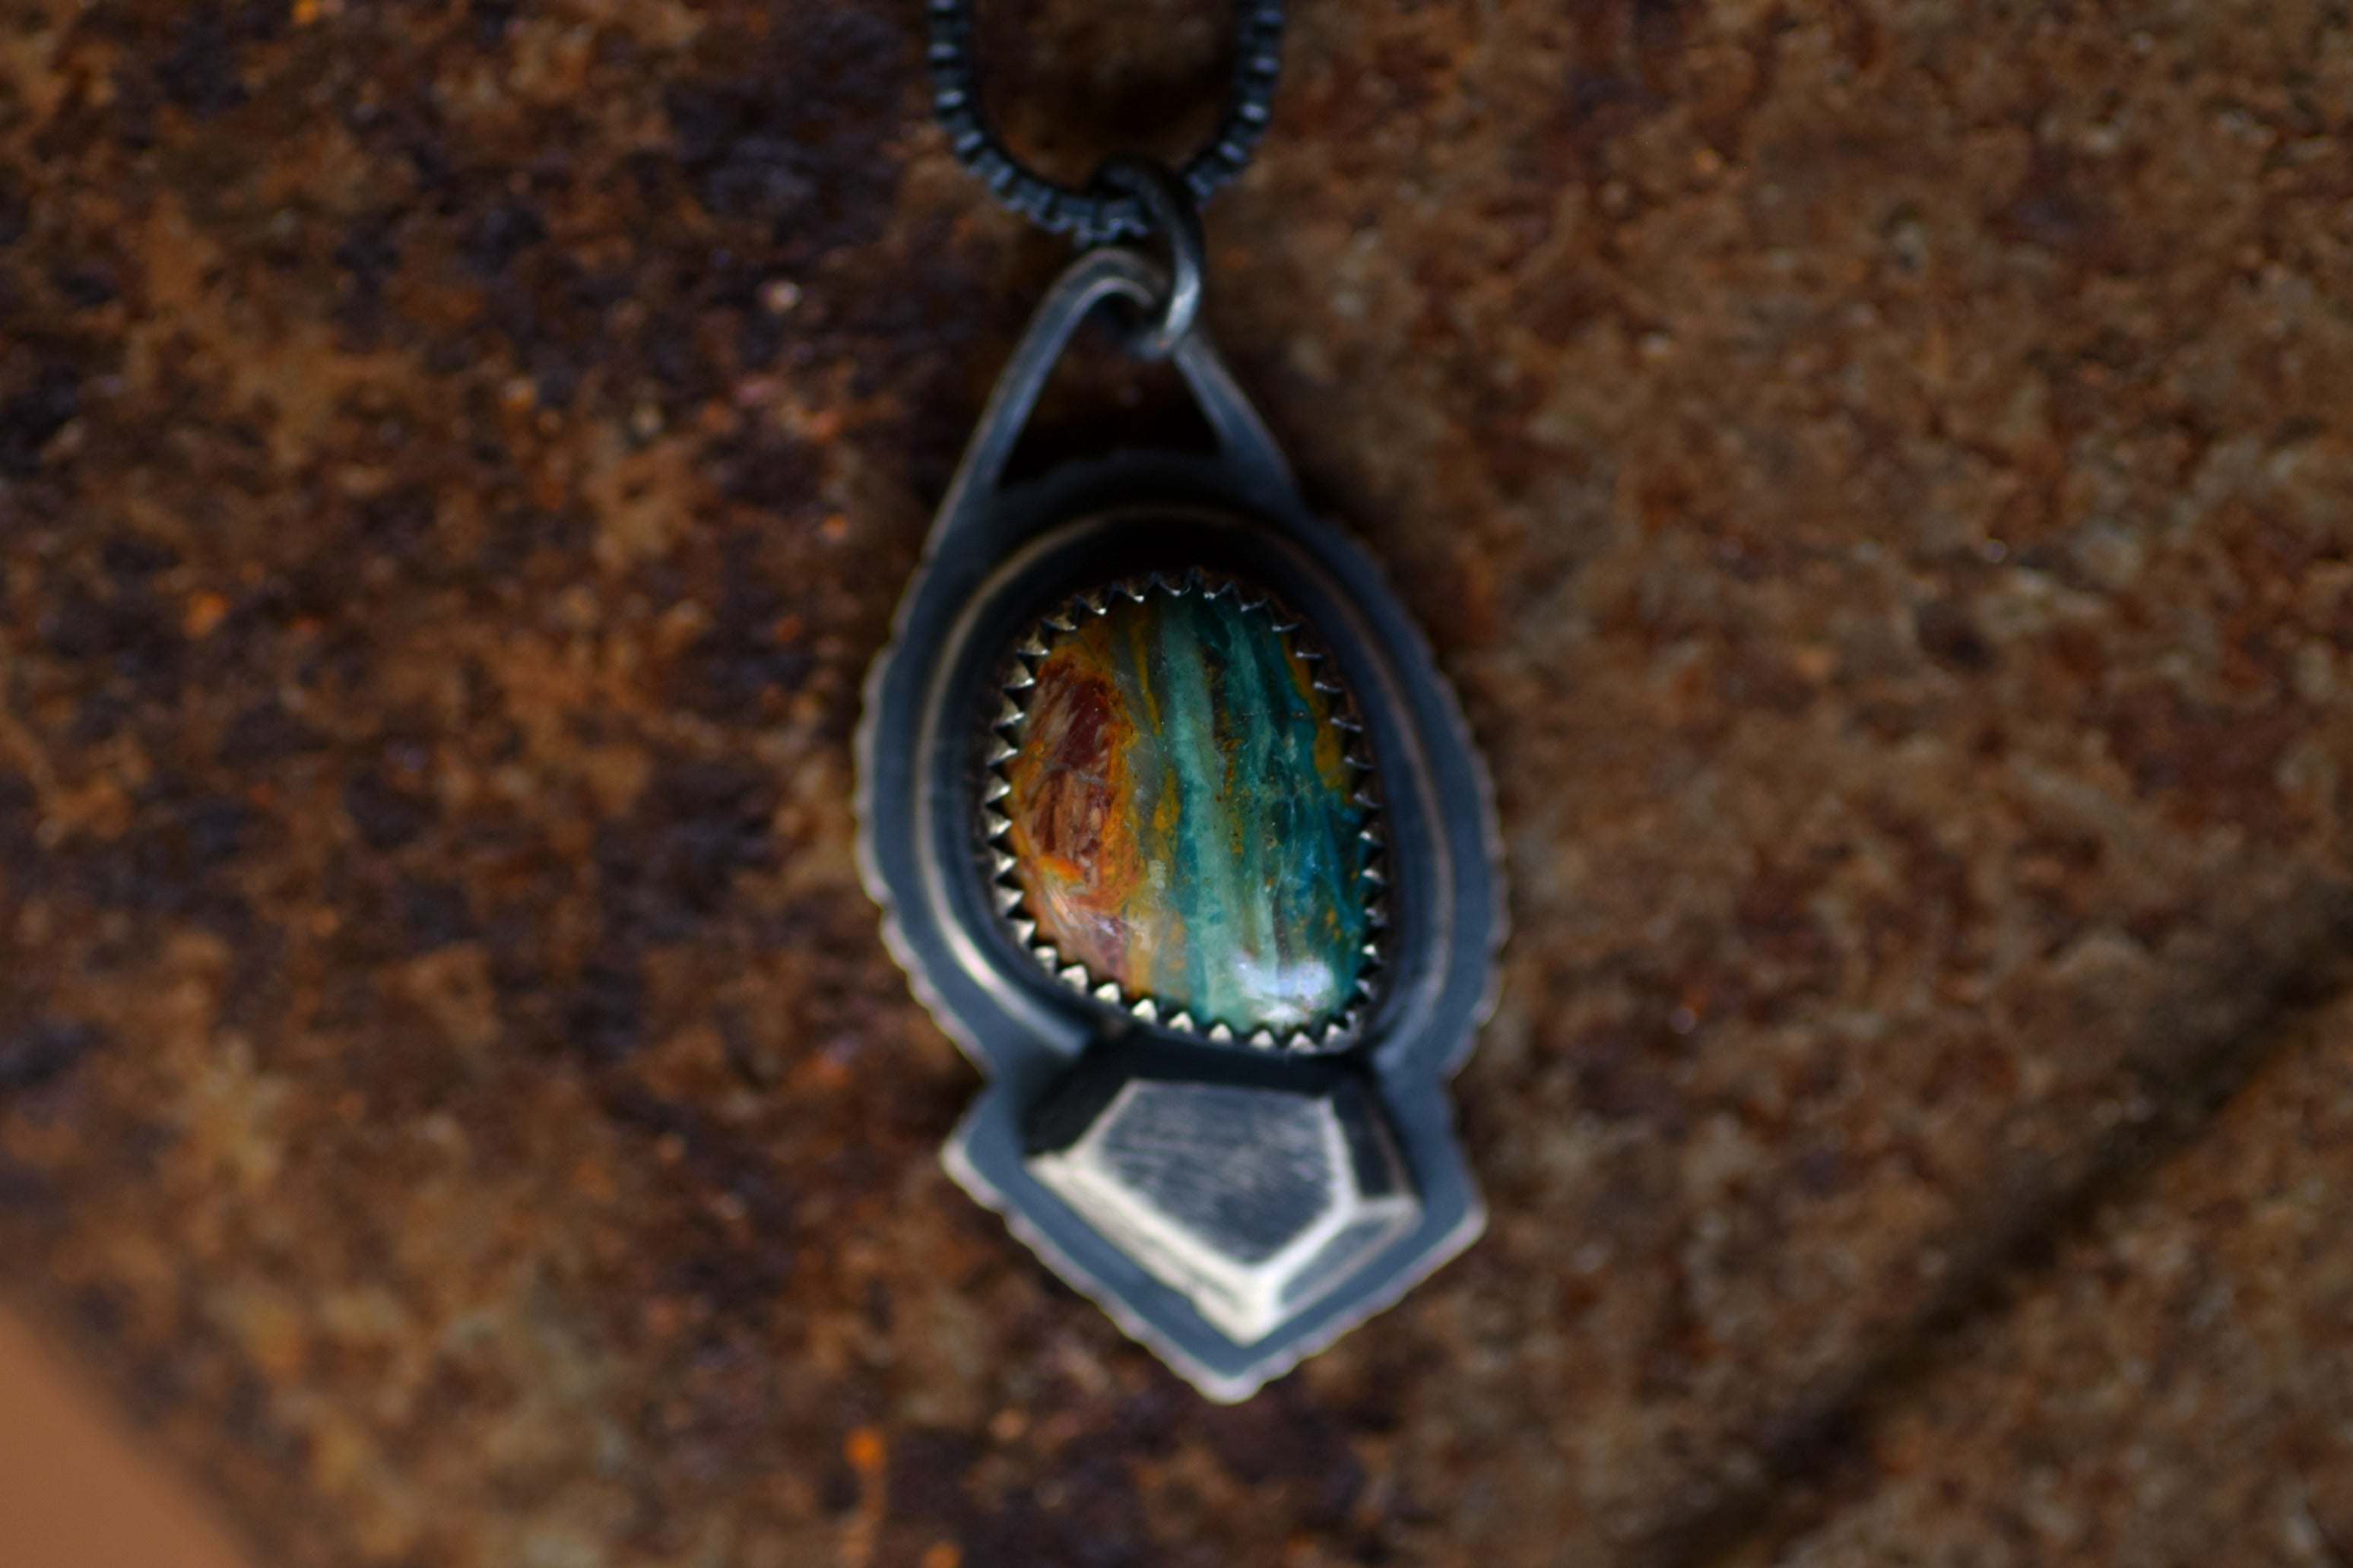 Blue Peruvian Opal Rough Gem Necklaces